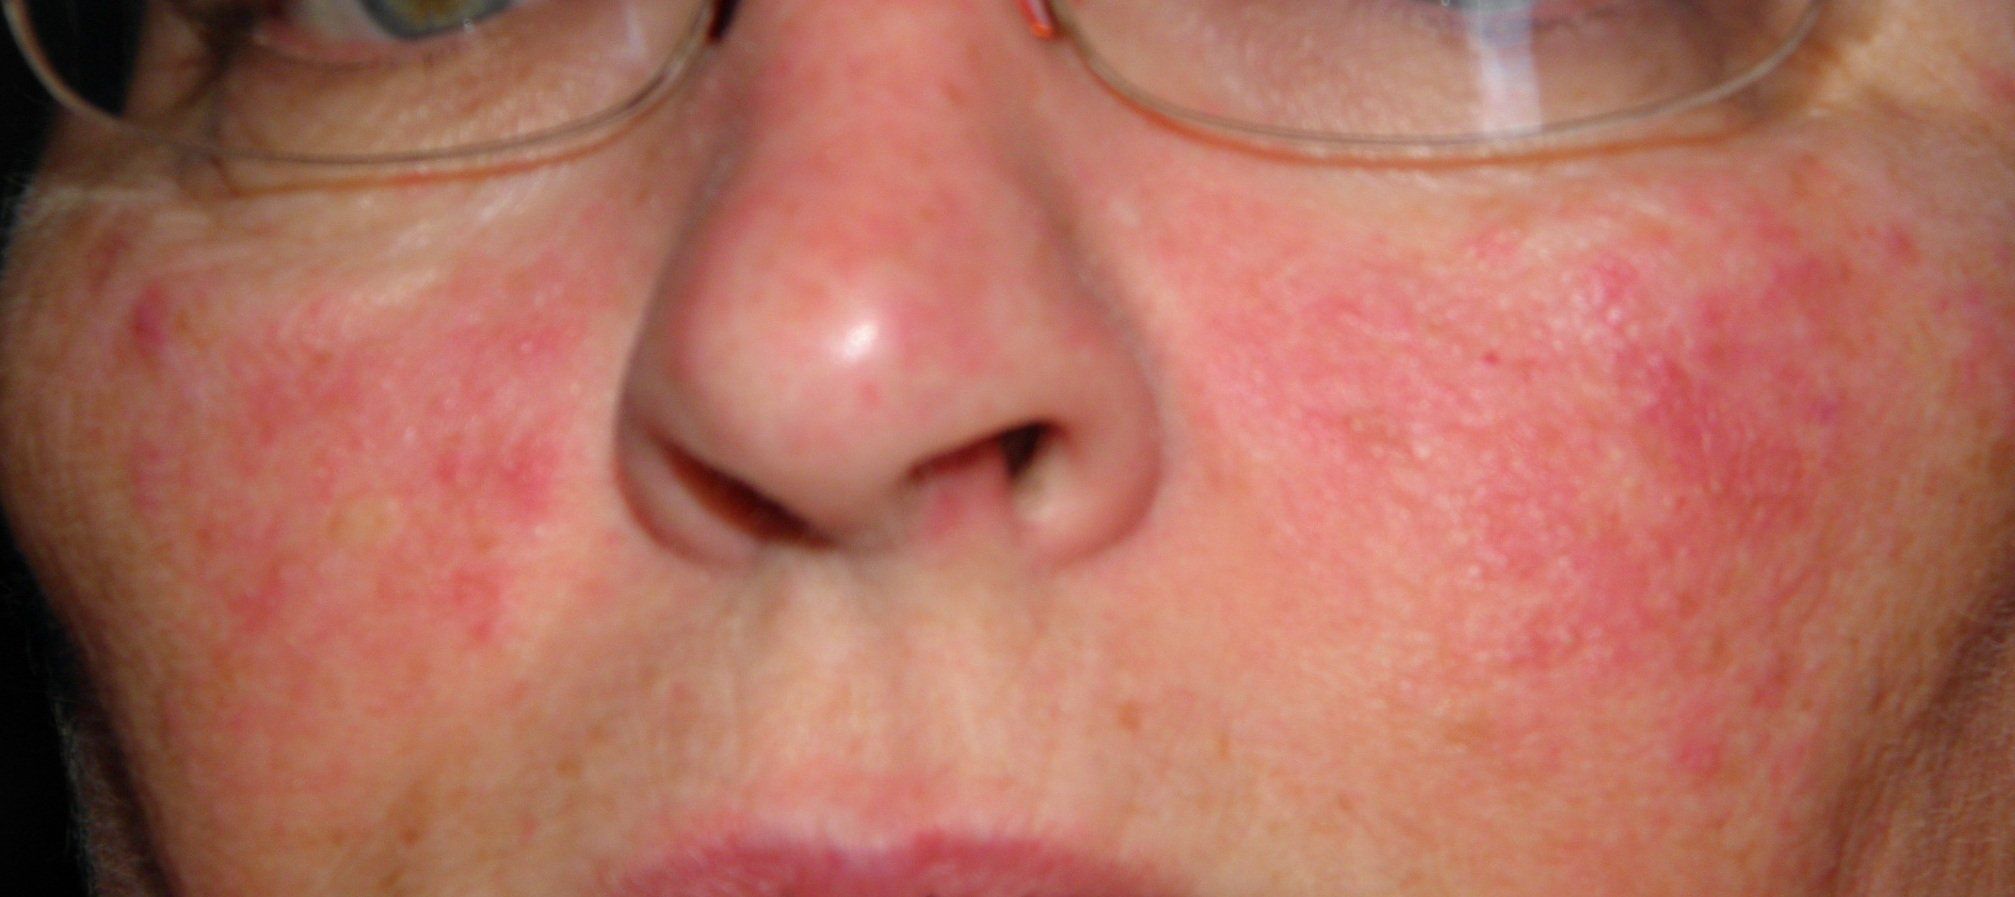 Facial rash cheeks